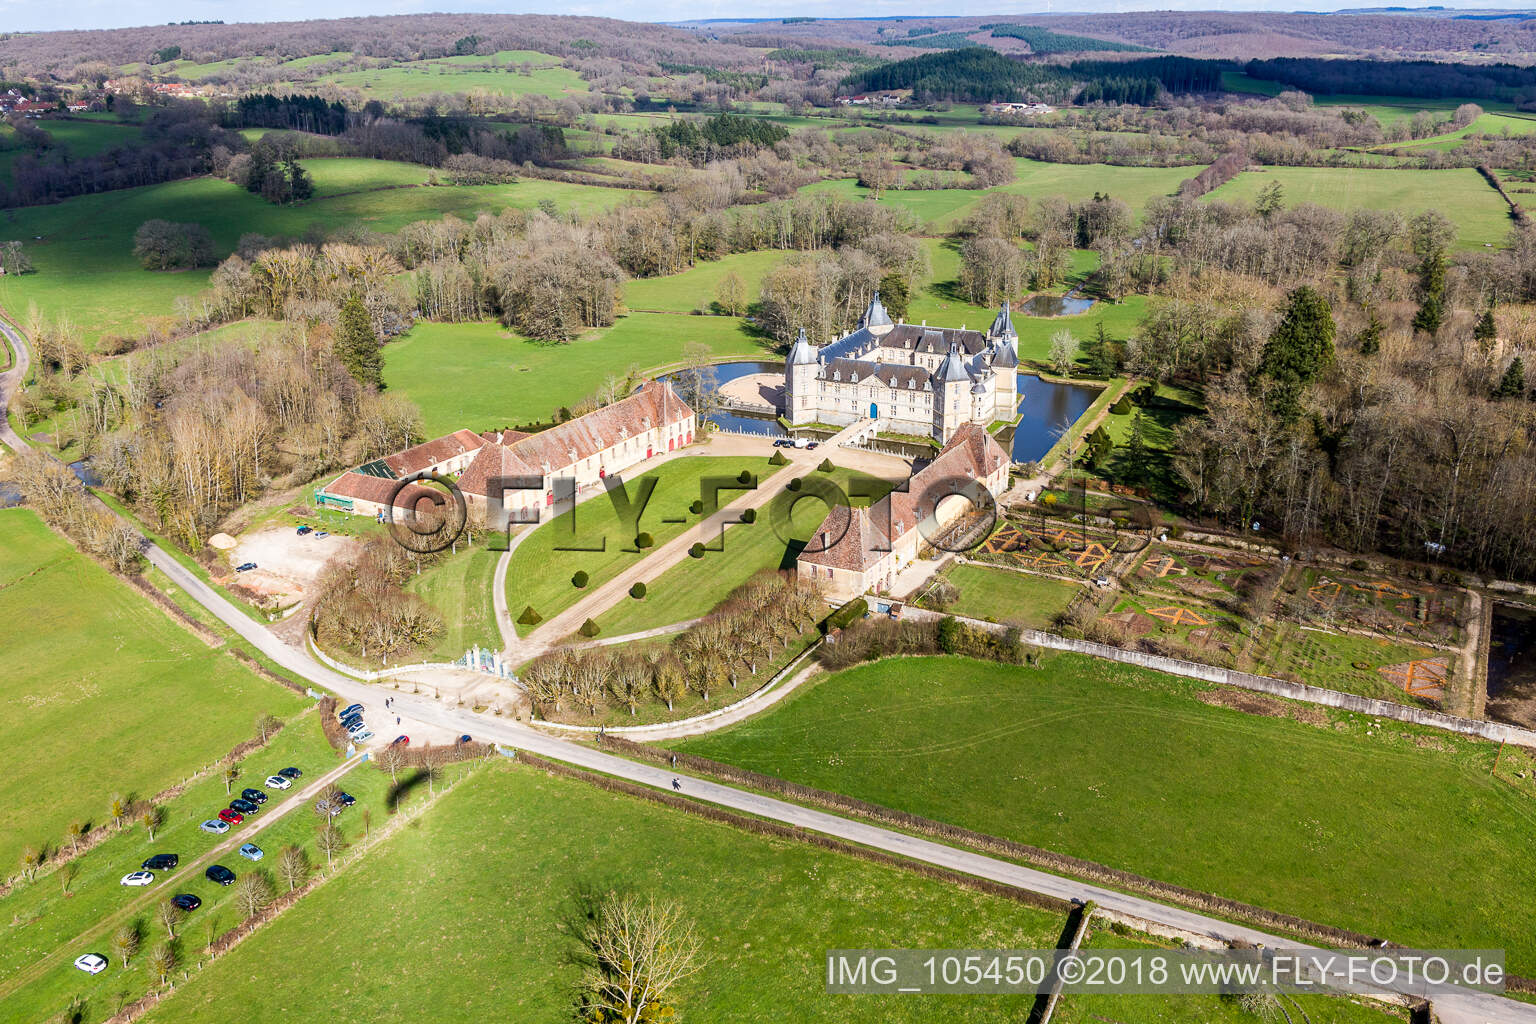 Château Sully château avec douves en Bourgogne à Sully dans le département Saône et Loire, France depuis l'avion